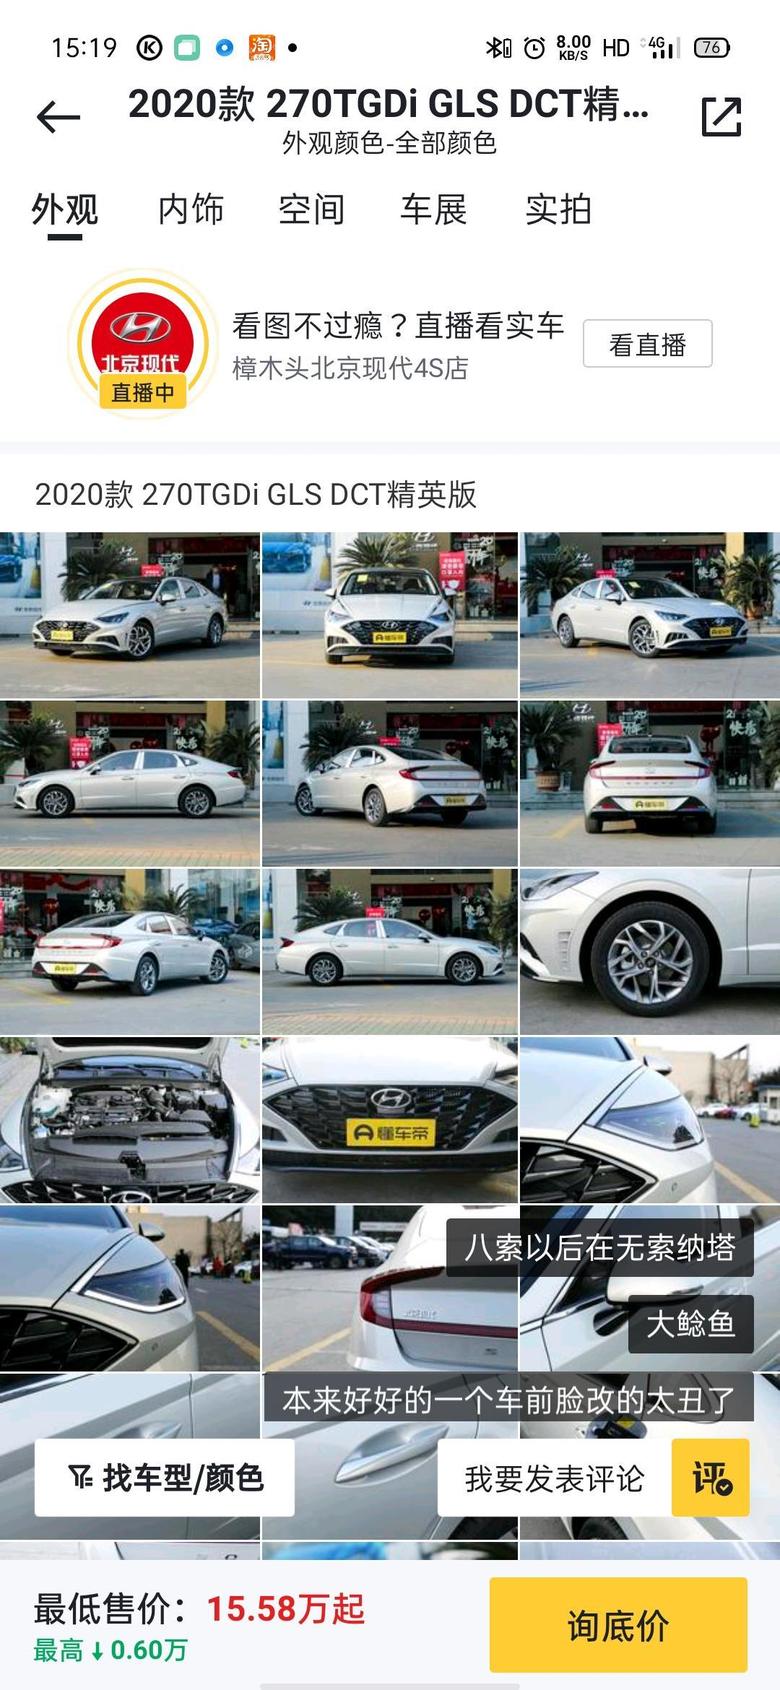 索纳塔 本人想在广东或者广西购买1.5T精英版裸车价多少呢加天窗要加多少钱呢？首付三成分期36期大概多少钱一个月呢请各位大神解答一下